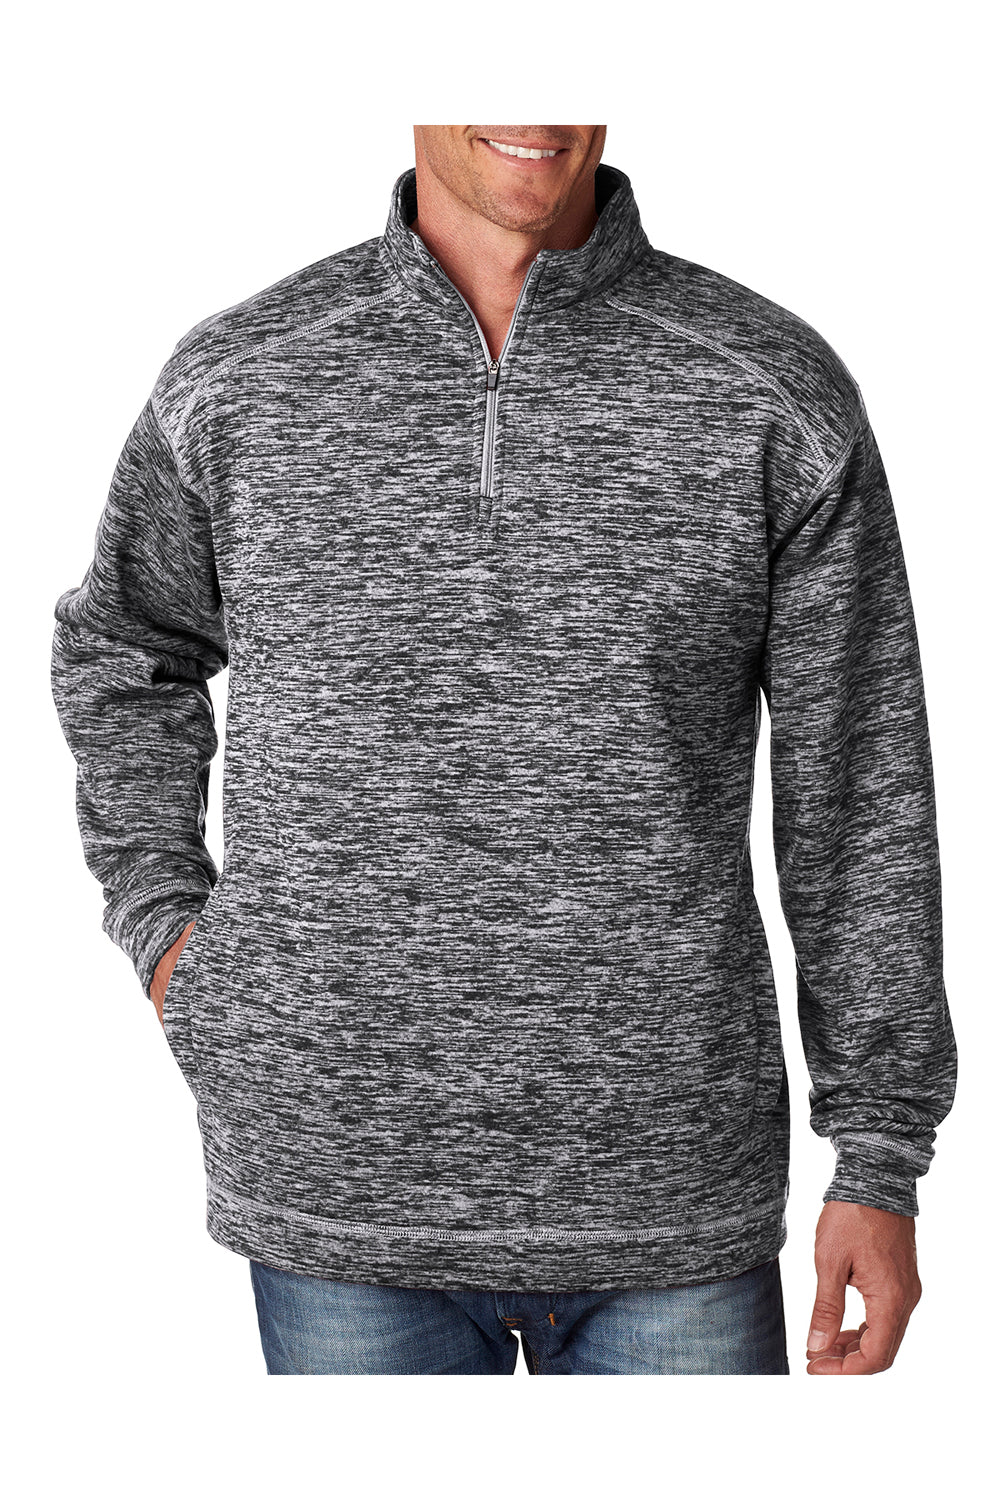 J America JA8614 Mens Cosmic Fleece 1/4 Zip Sweatshirt Charcoal Grey Front